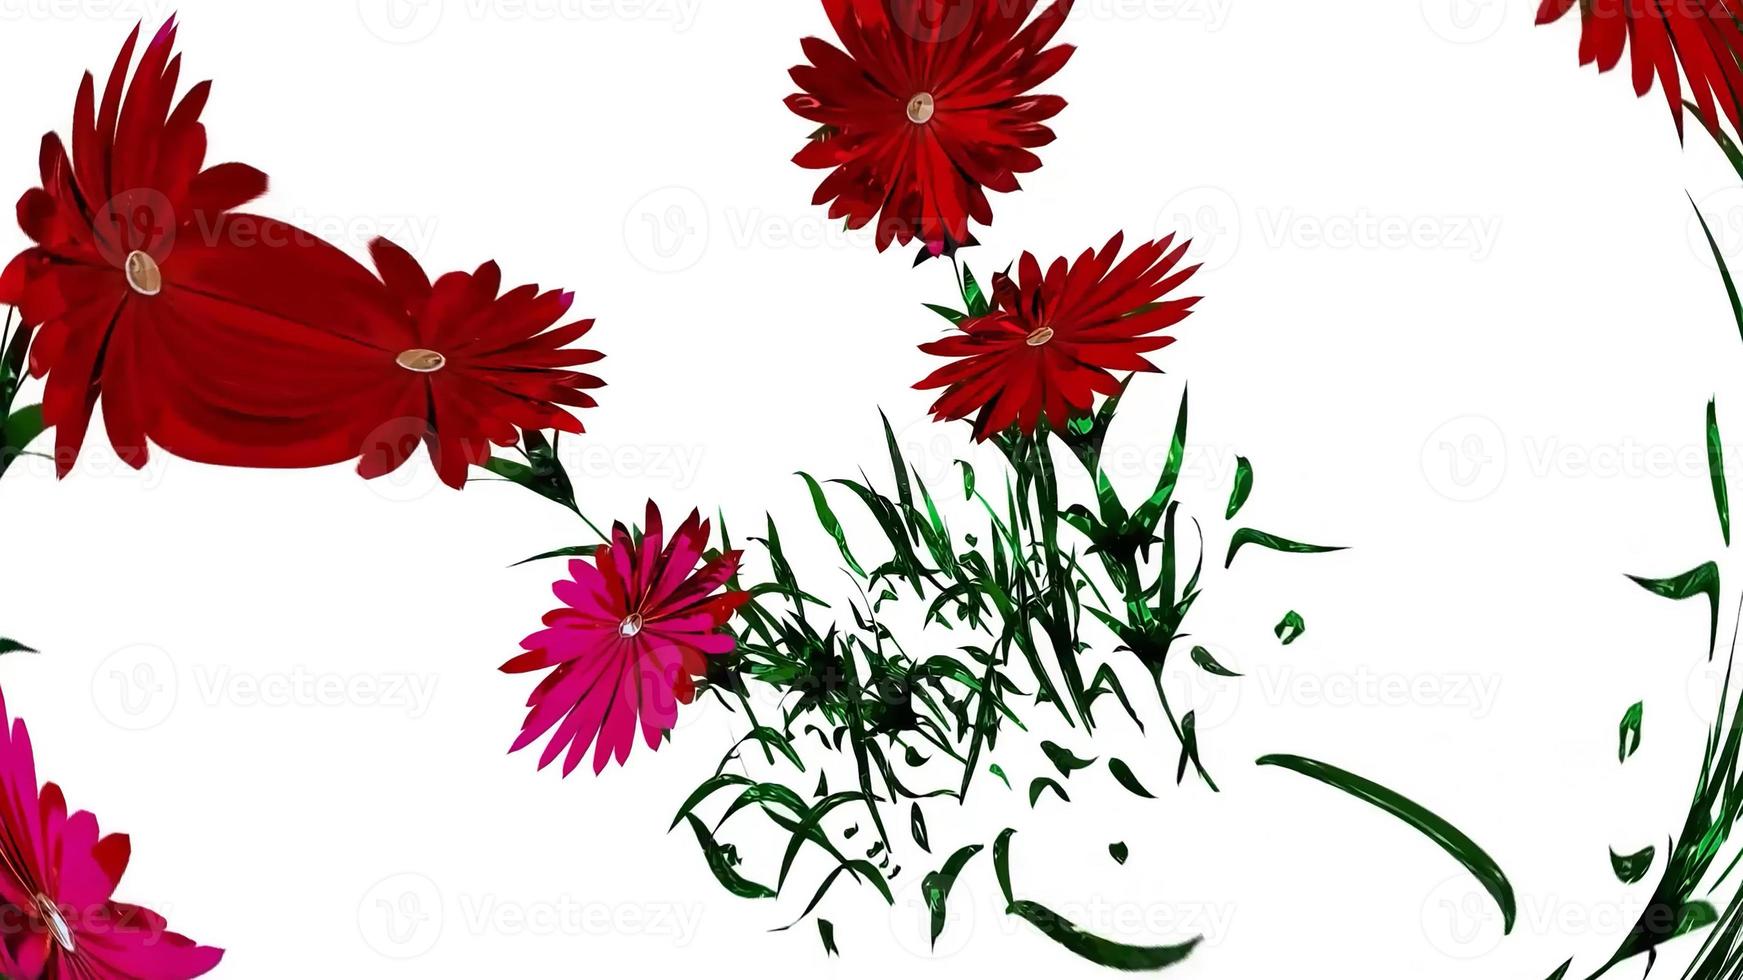 abstract bloemen botanisch digitaal illustratie foto